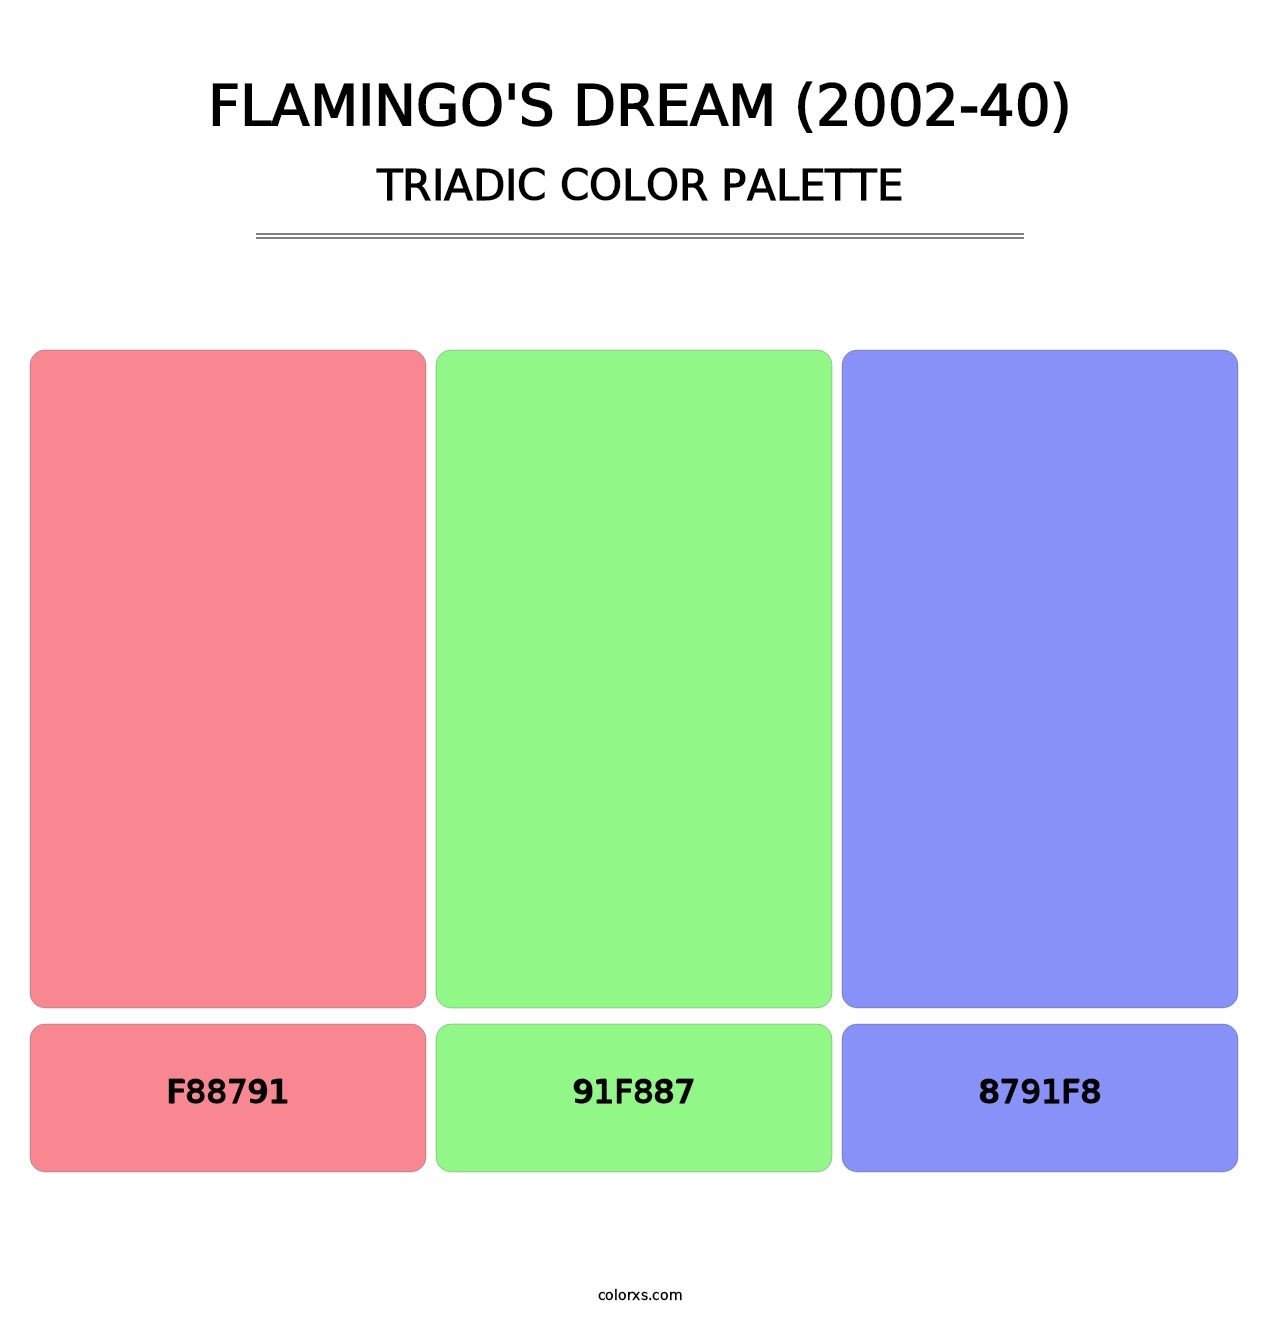 Flamingo's Dream (2002-40) - Triadic Color Palette